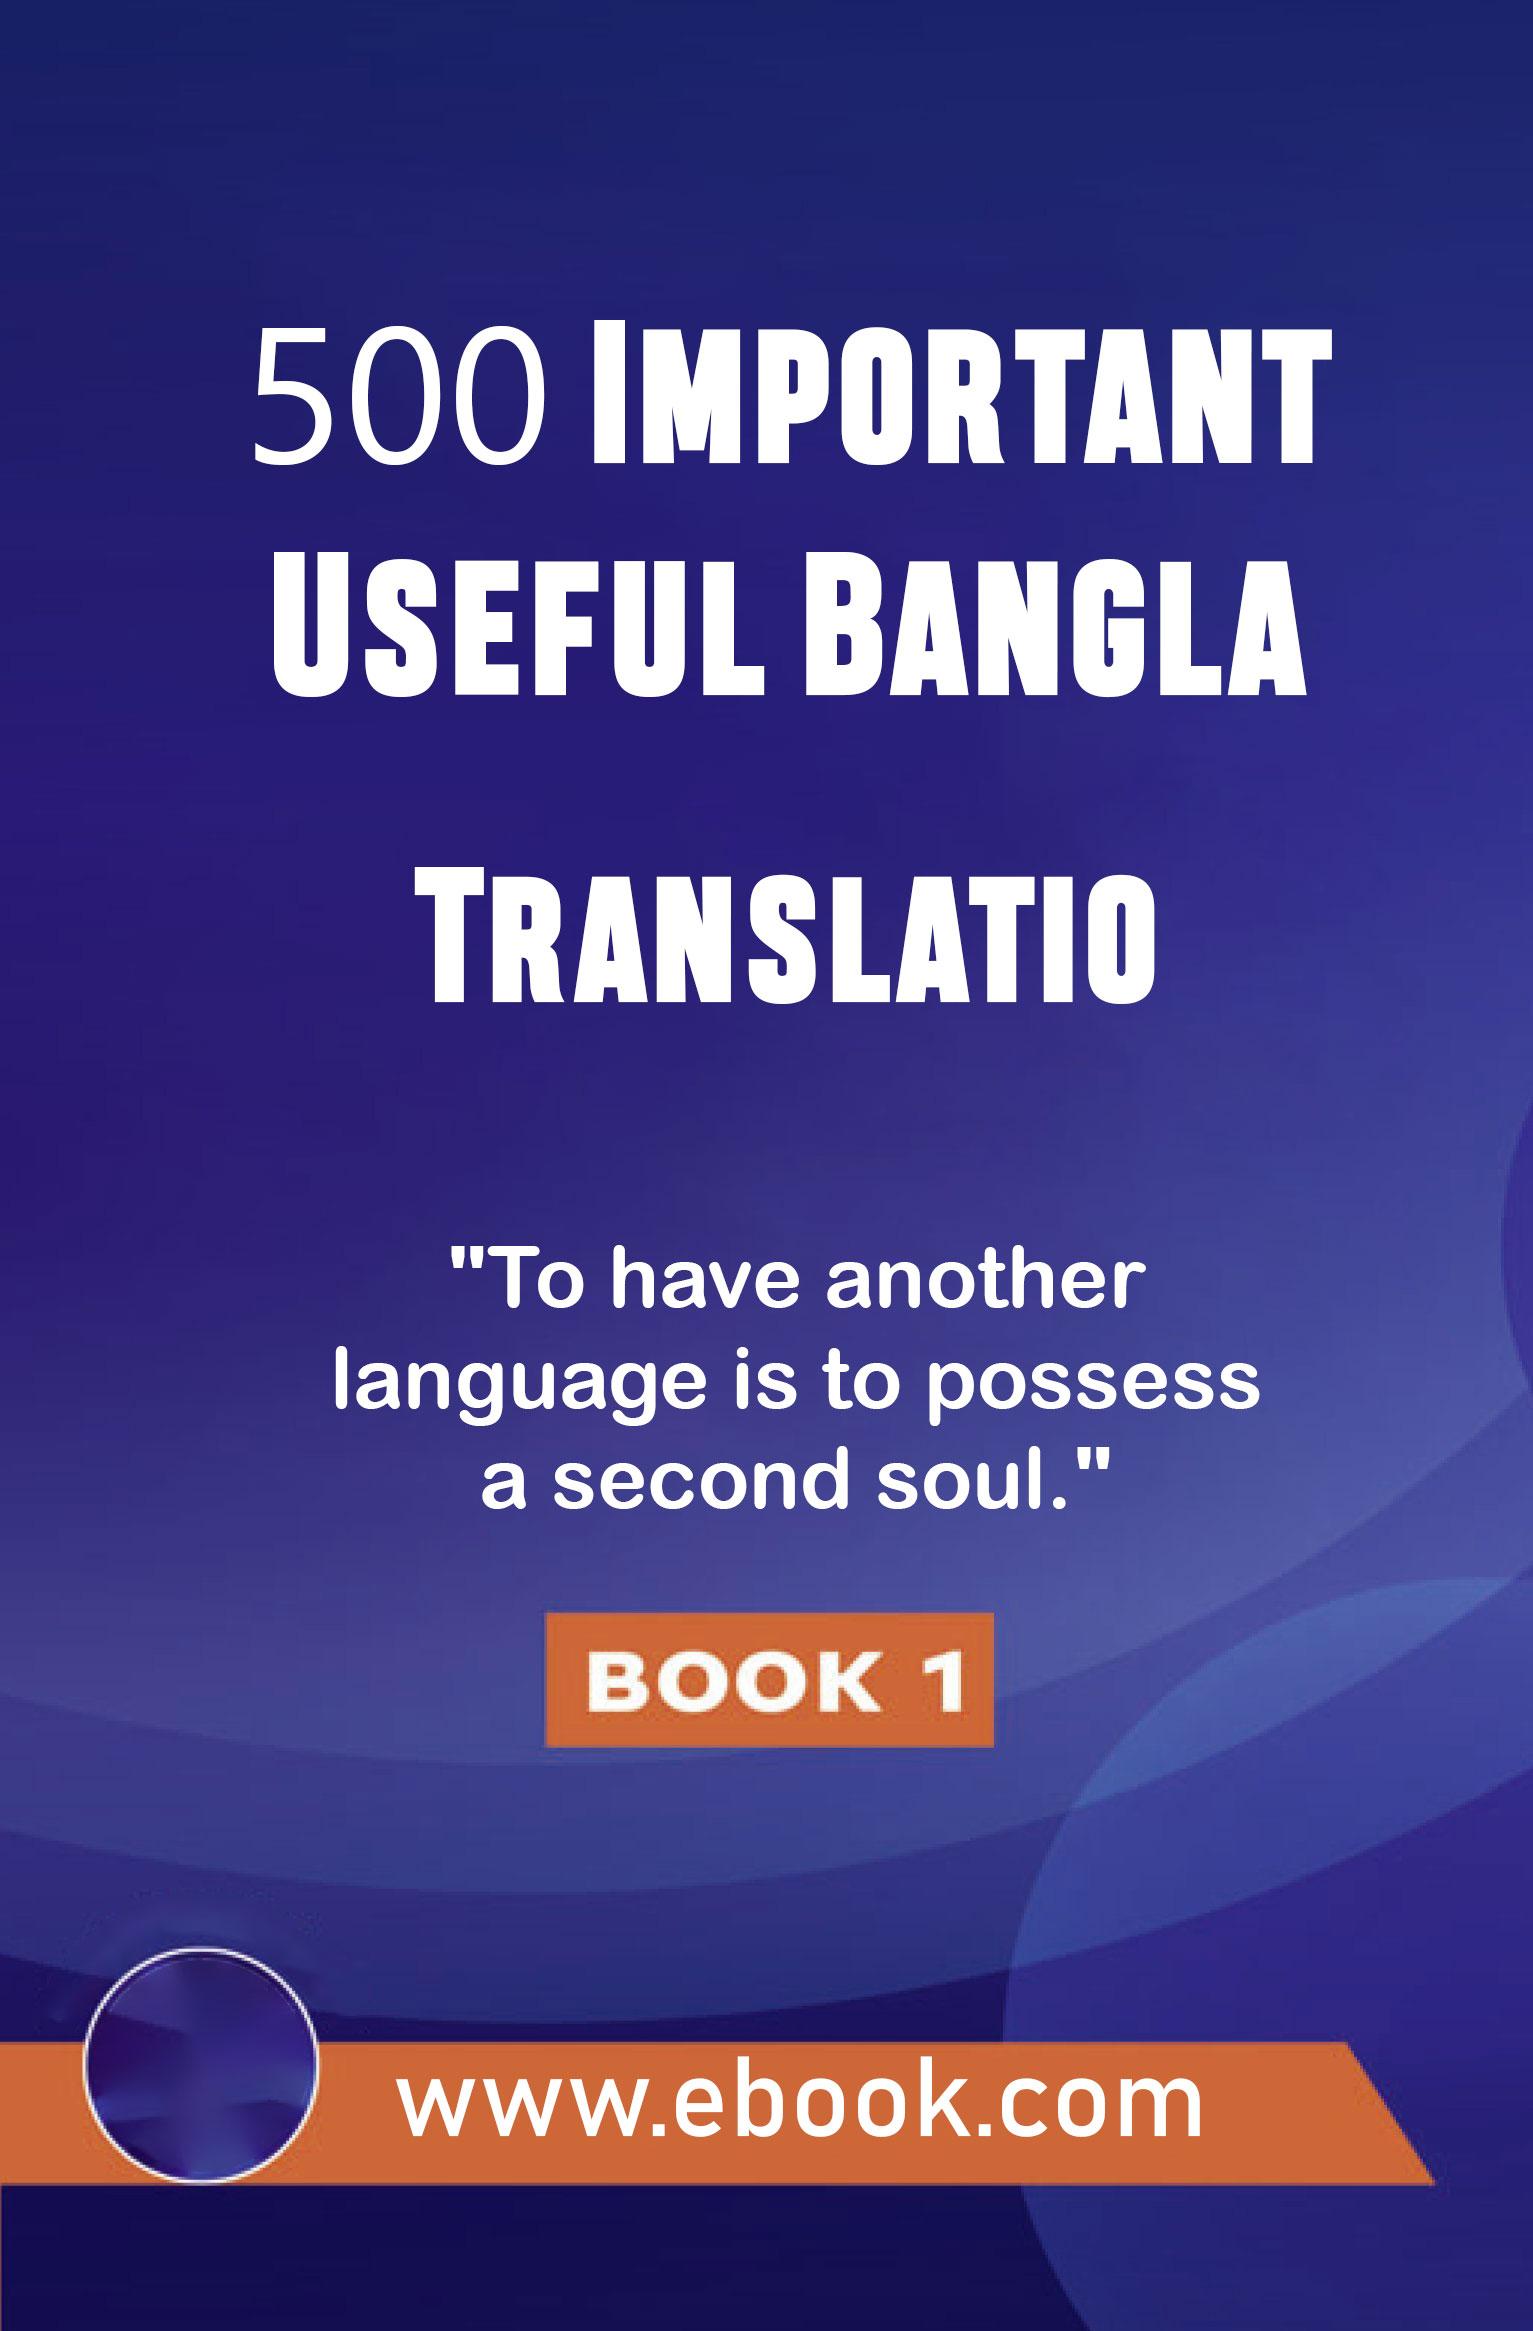 500 Important Useful Bangla Translatio - 500 Important Useful Bangla Translatio